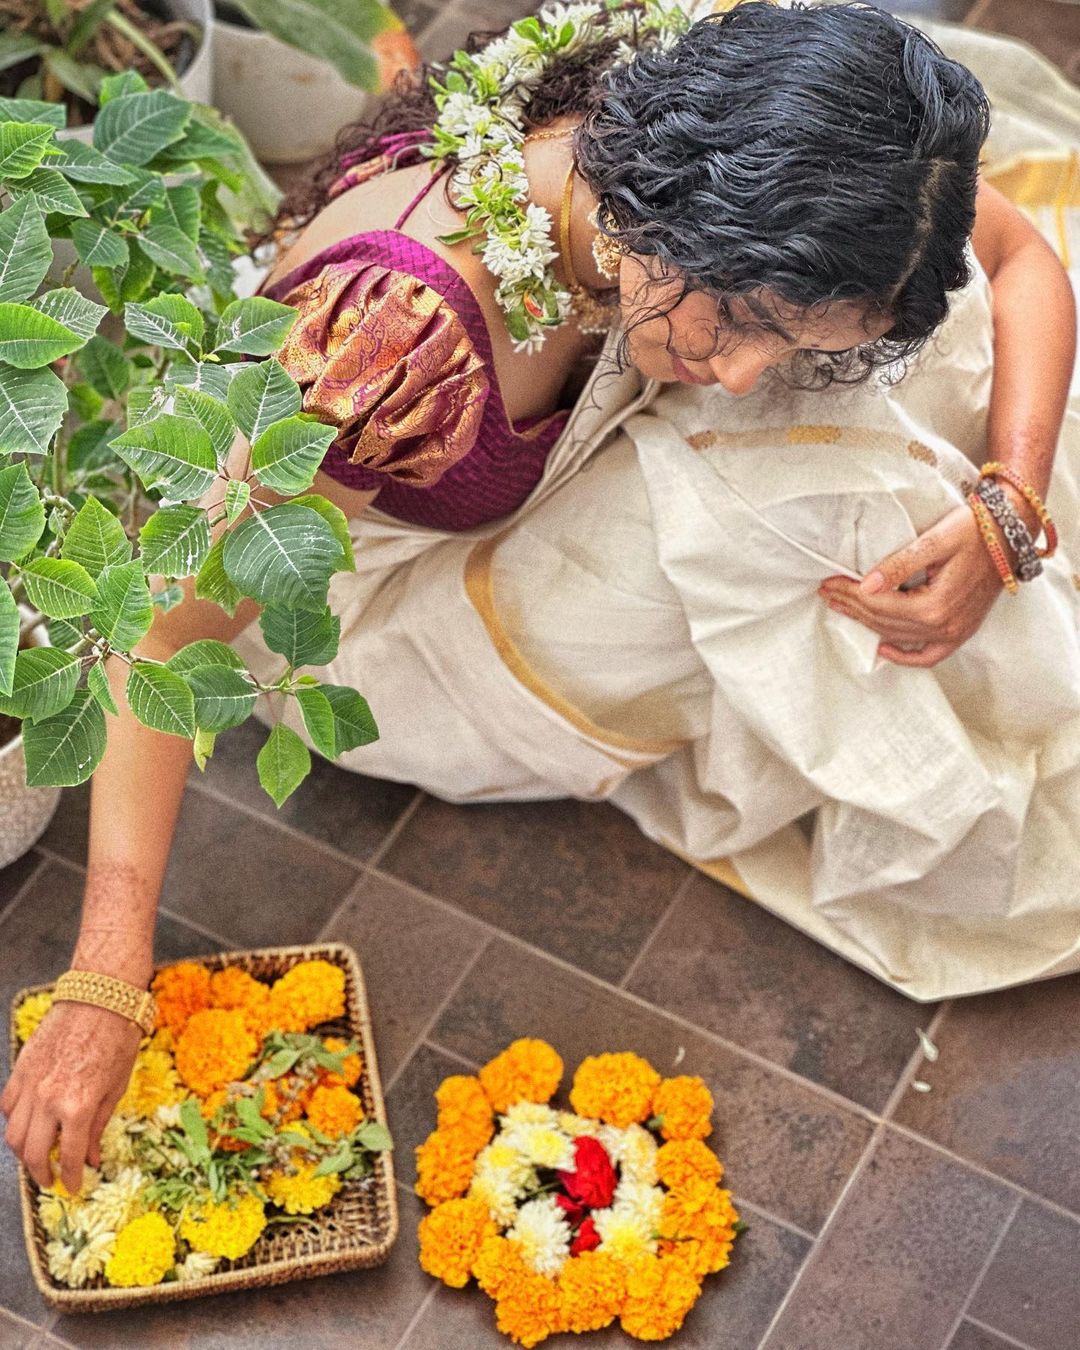 Actress Anupama Parameswaran onam celebration photos goes viral (5)